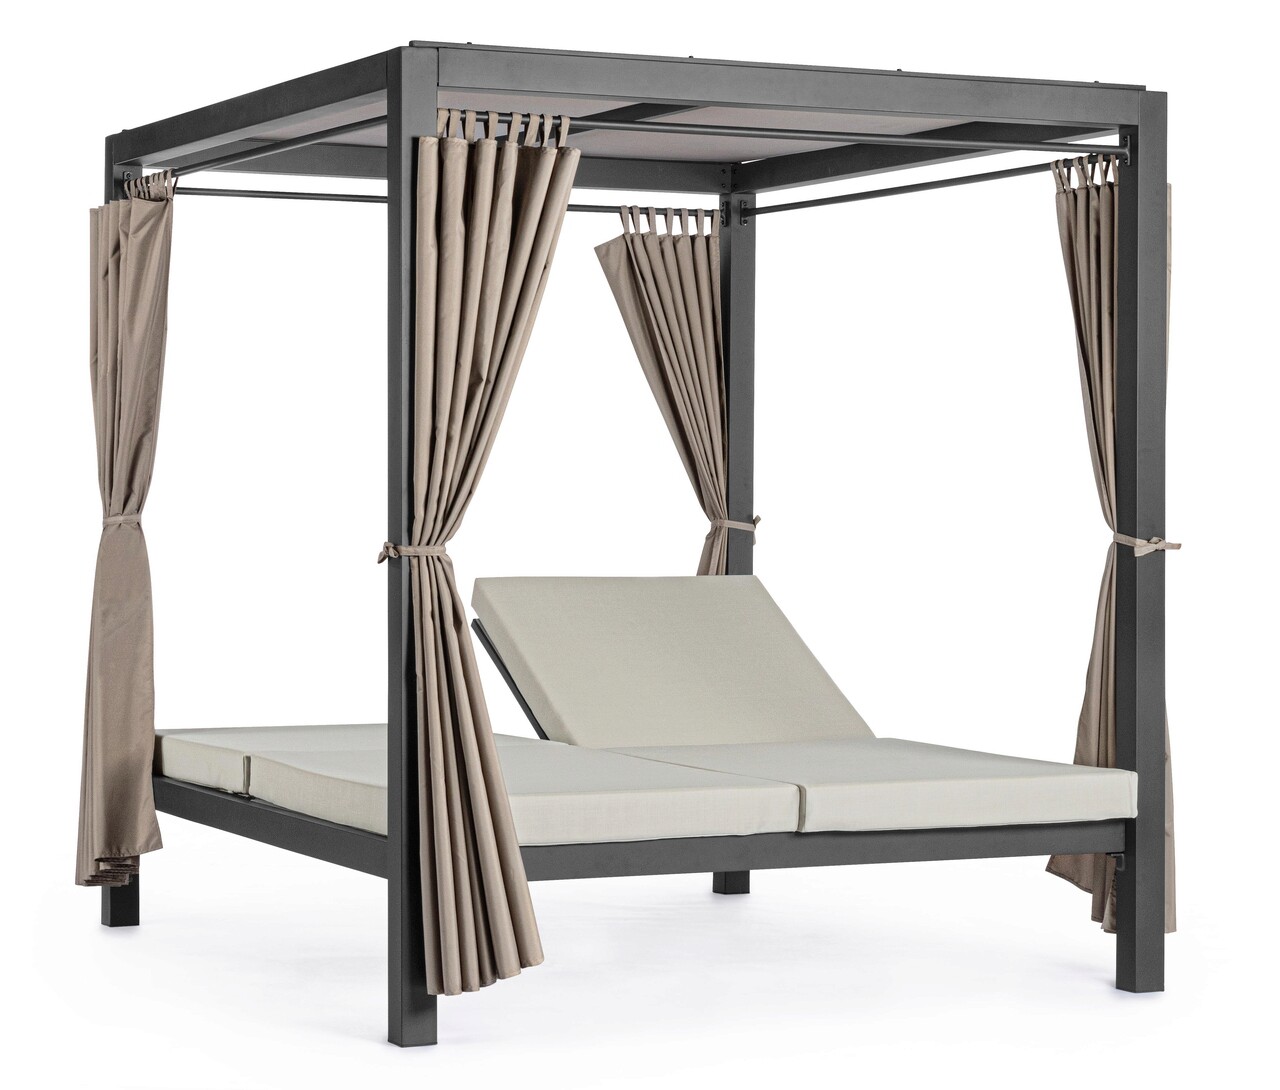 Dream nappali ágy, bizzotto, 188 x 208 x 205 cm, alumínium/textil/poliészter, szénszín